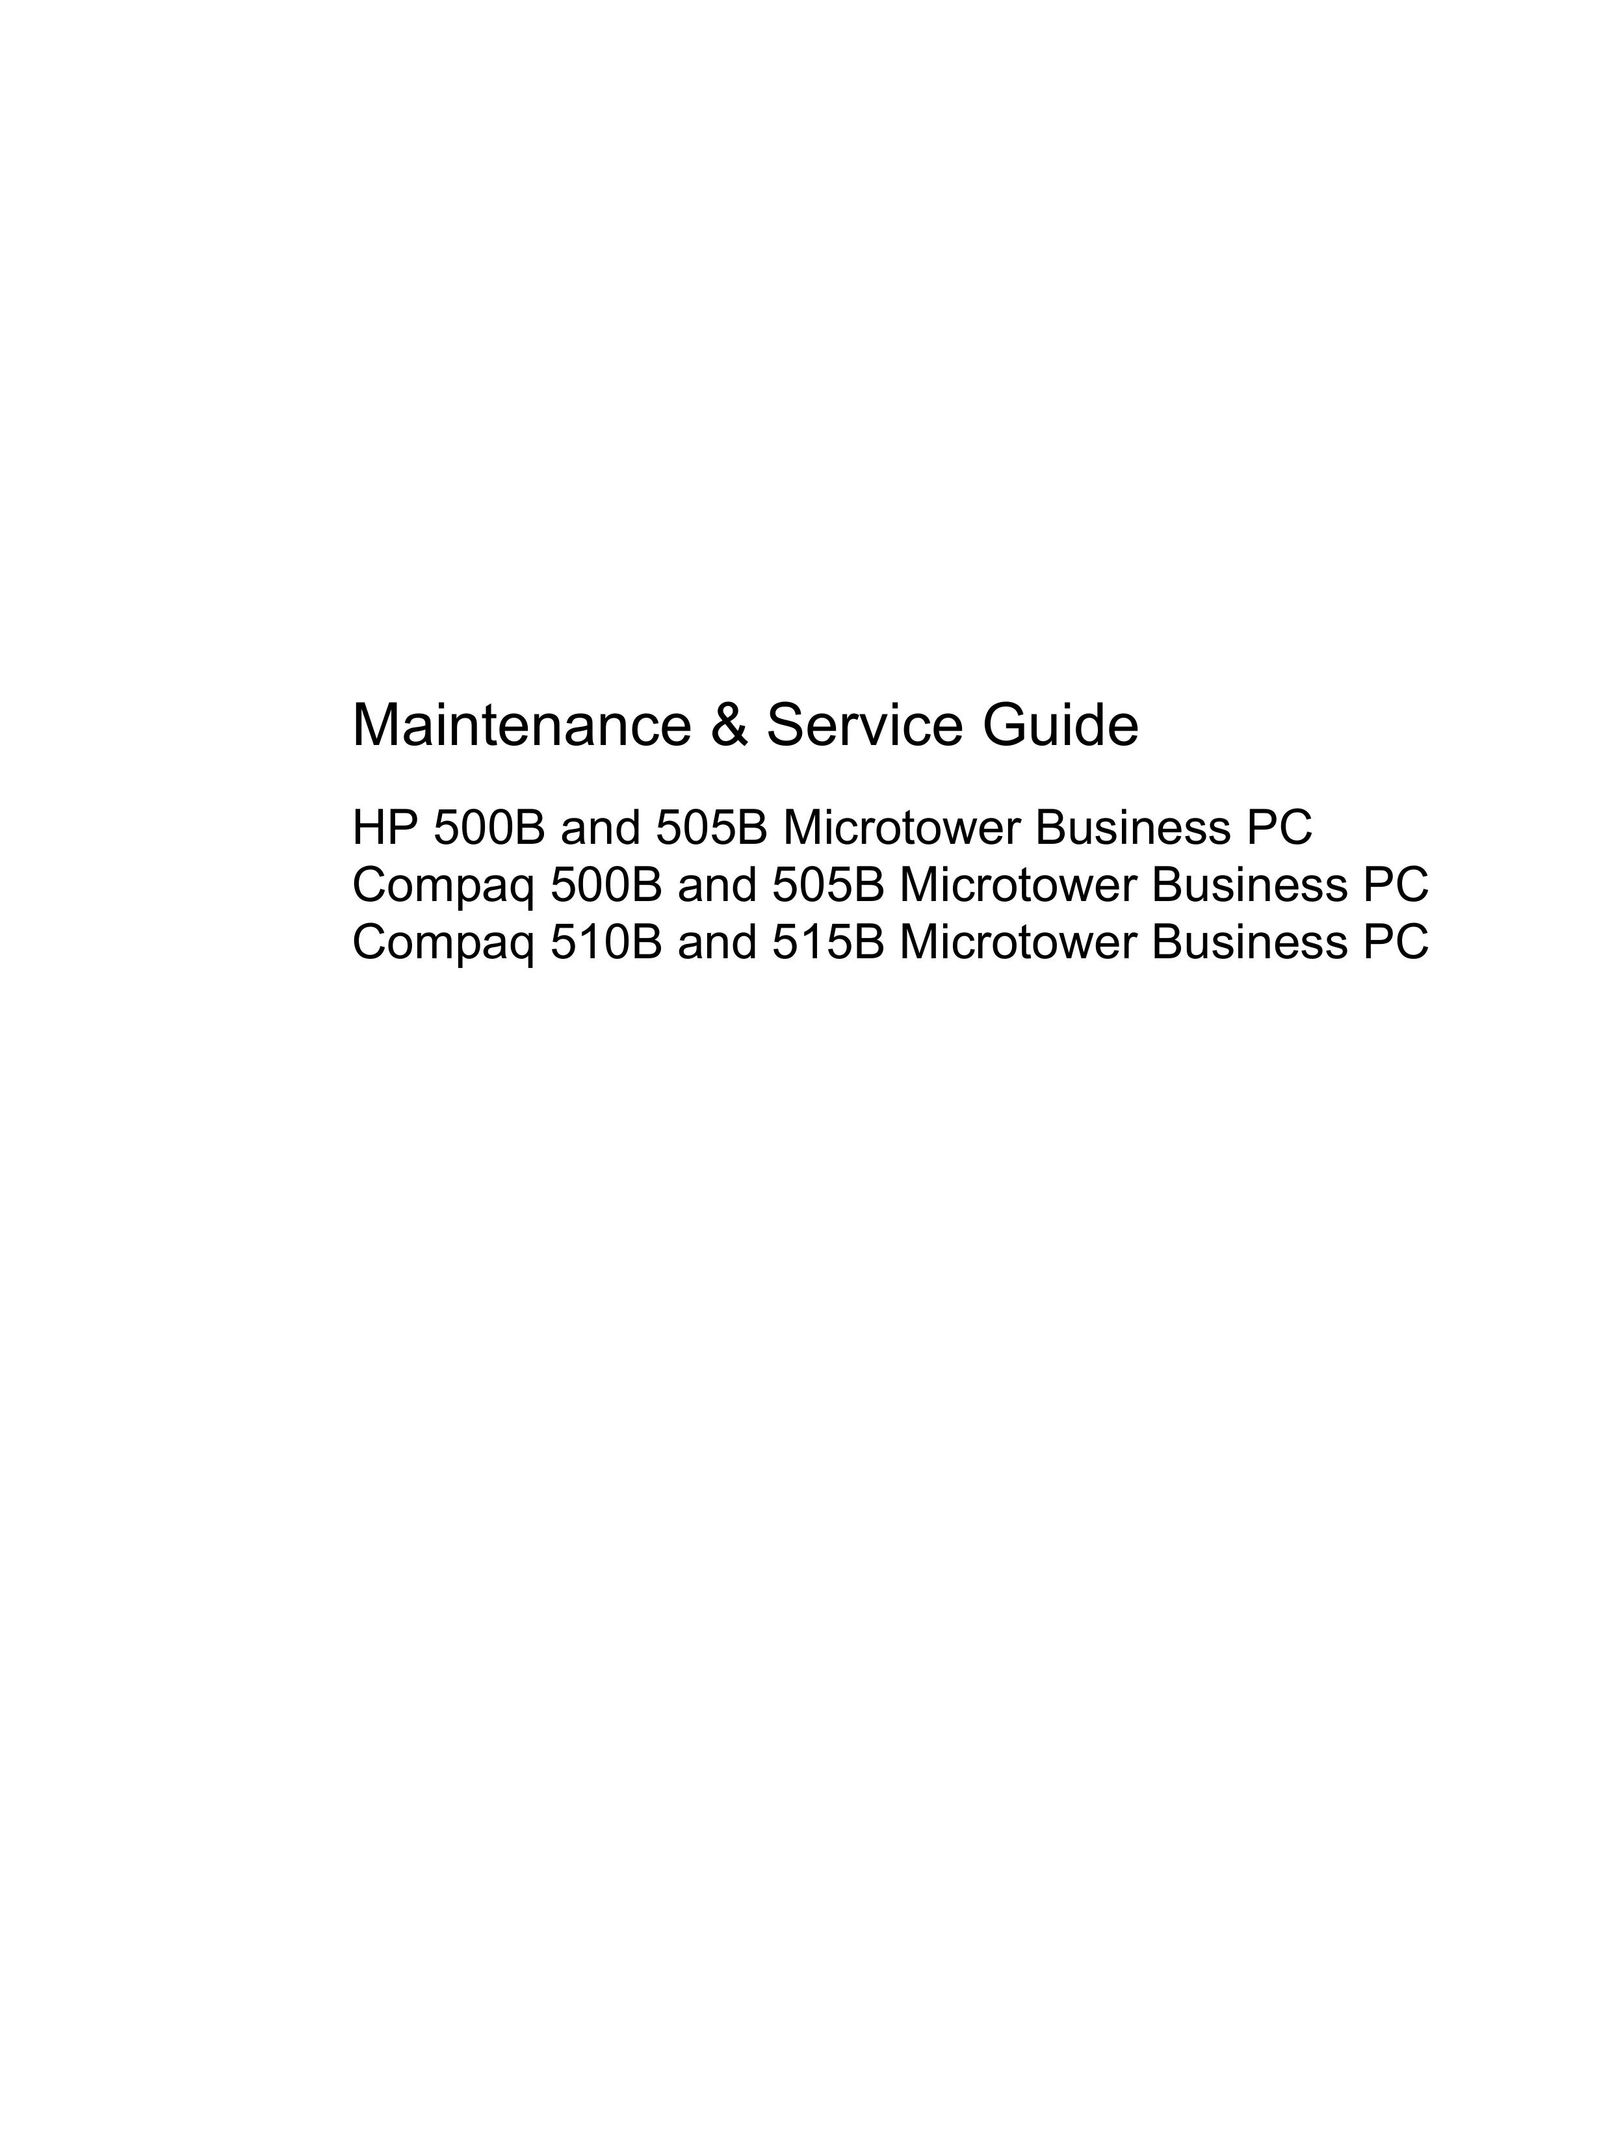 HP (Hewlett-Packard) 505B Personal Computer User Manual